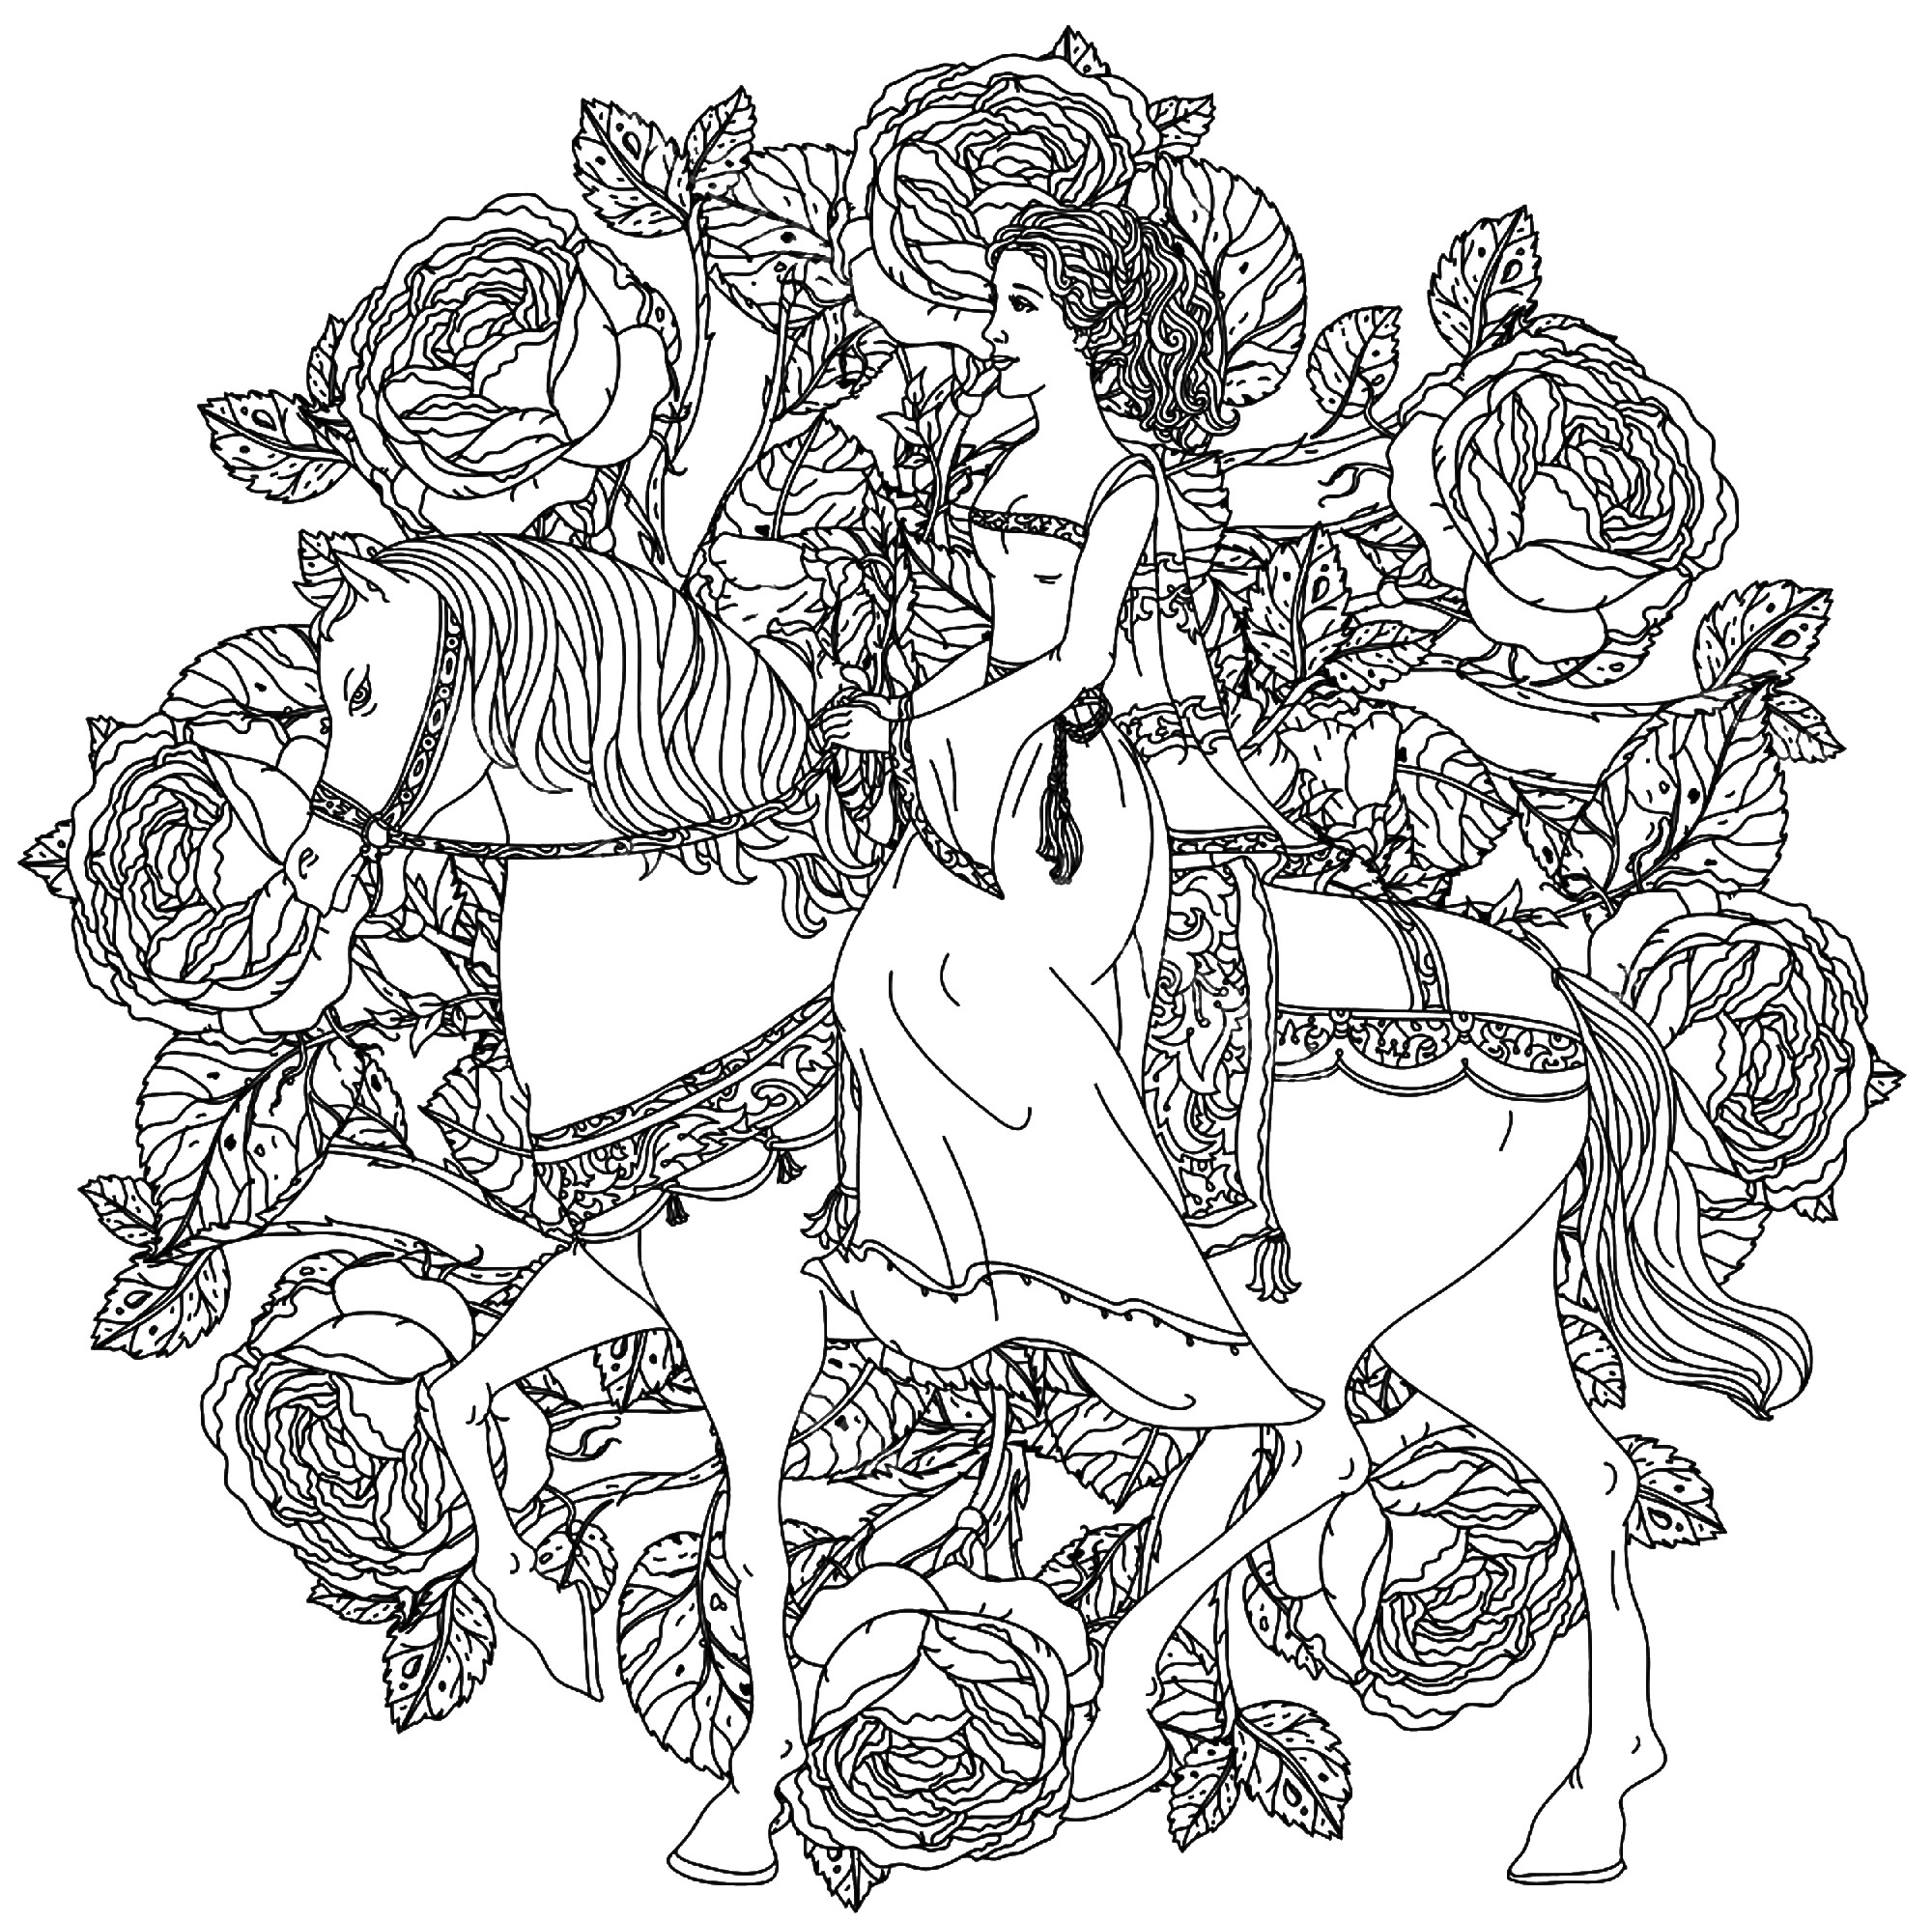 Eine Prinzessin, die ihr Pferd reitet, in einem wunderschönen Mandala aus Blumen